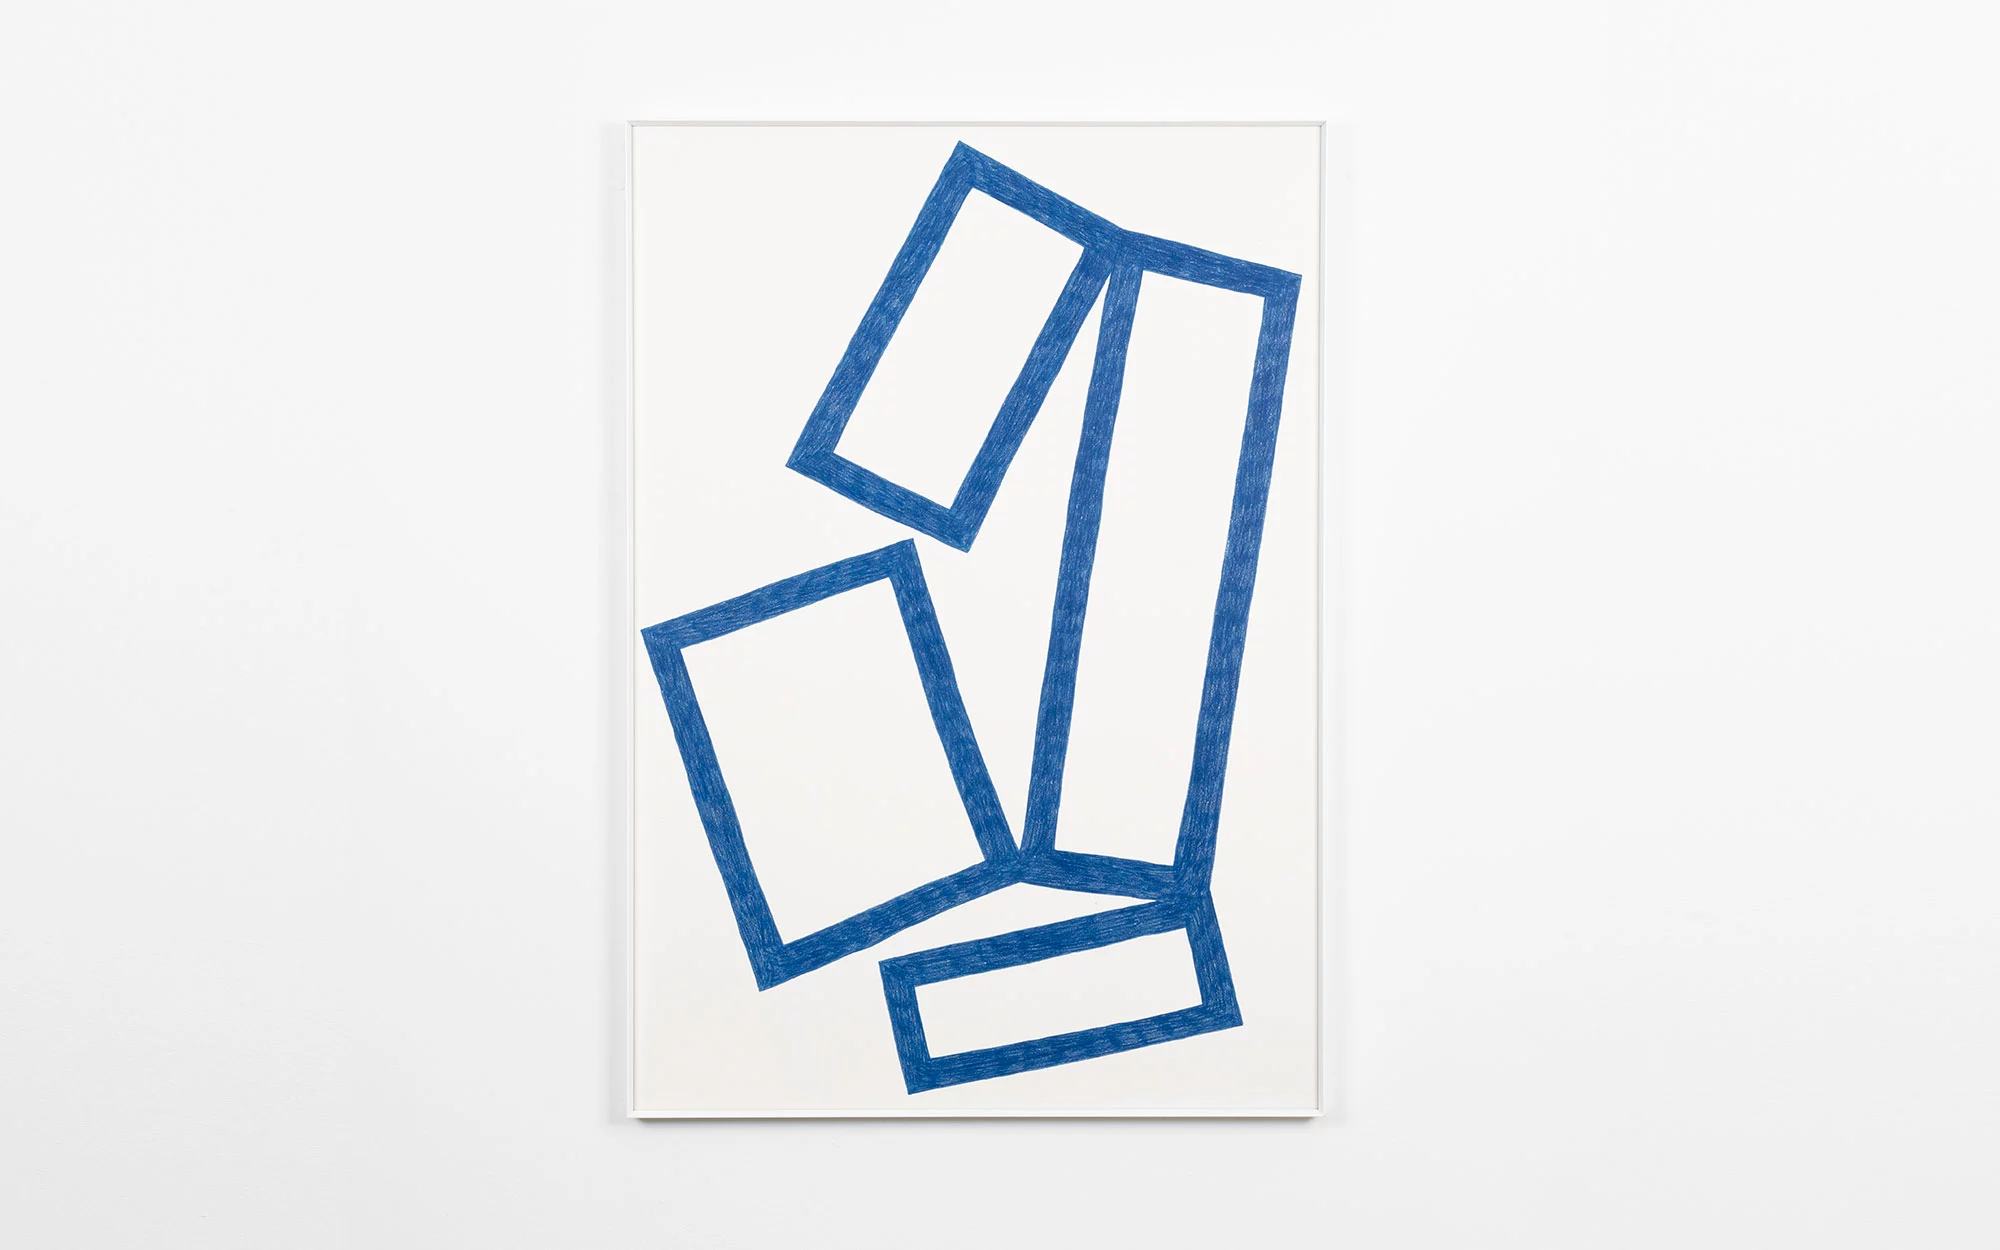 Cubes Drawings - Pierre Charpin - Storage - Galerie kreo